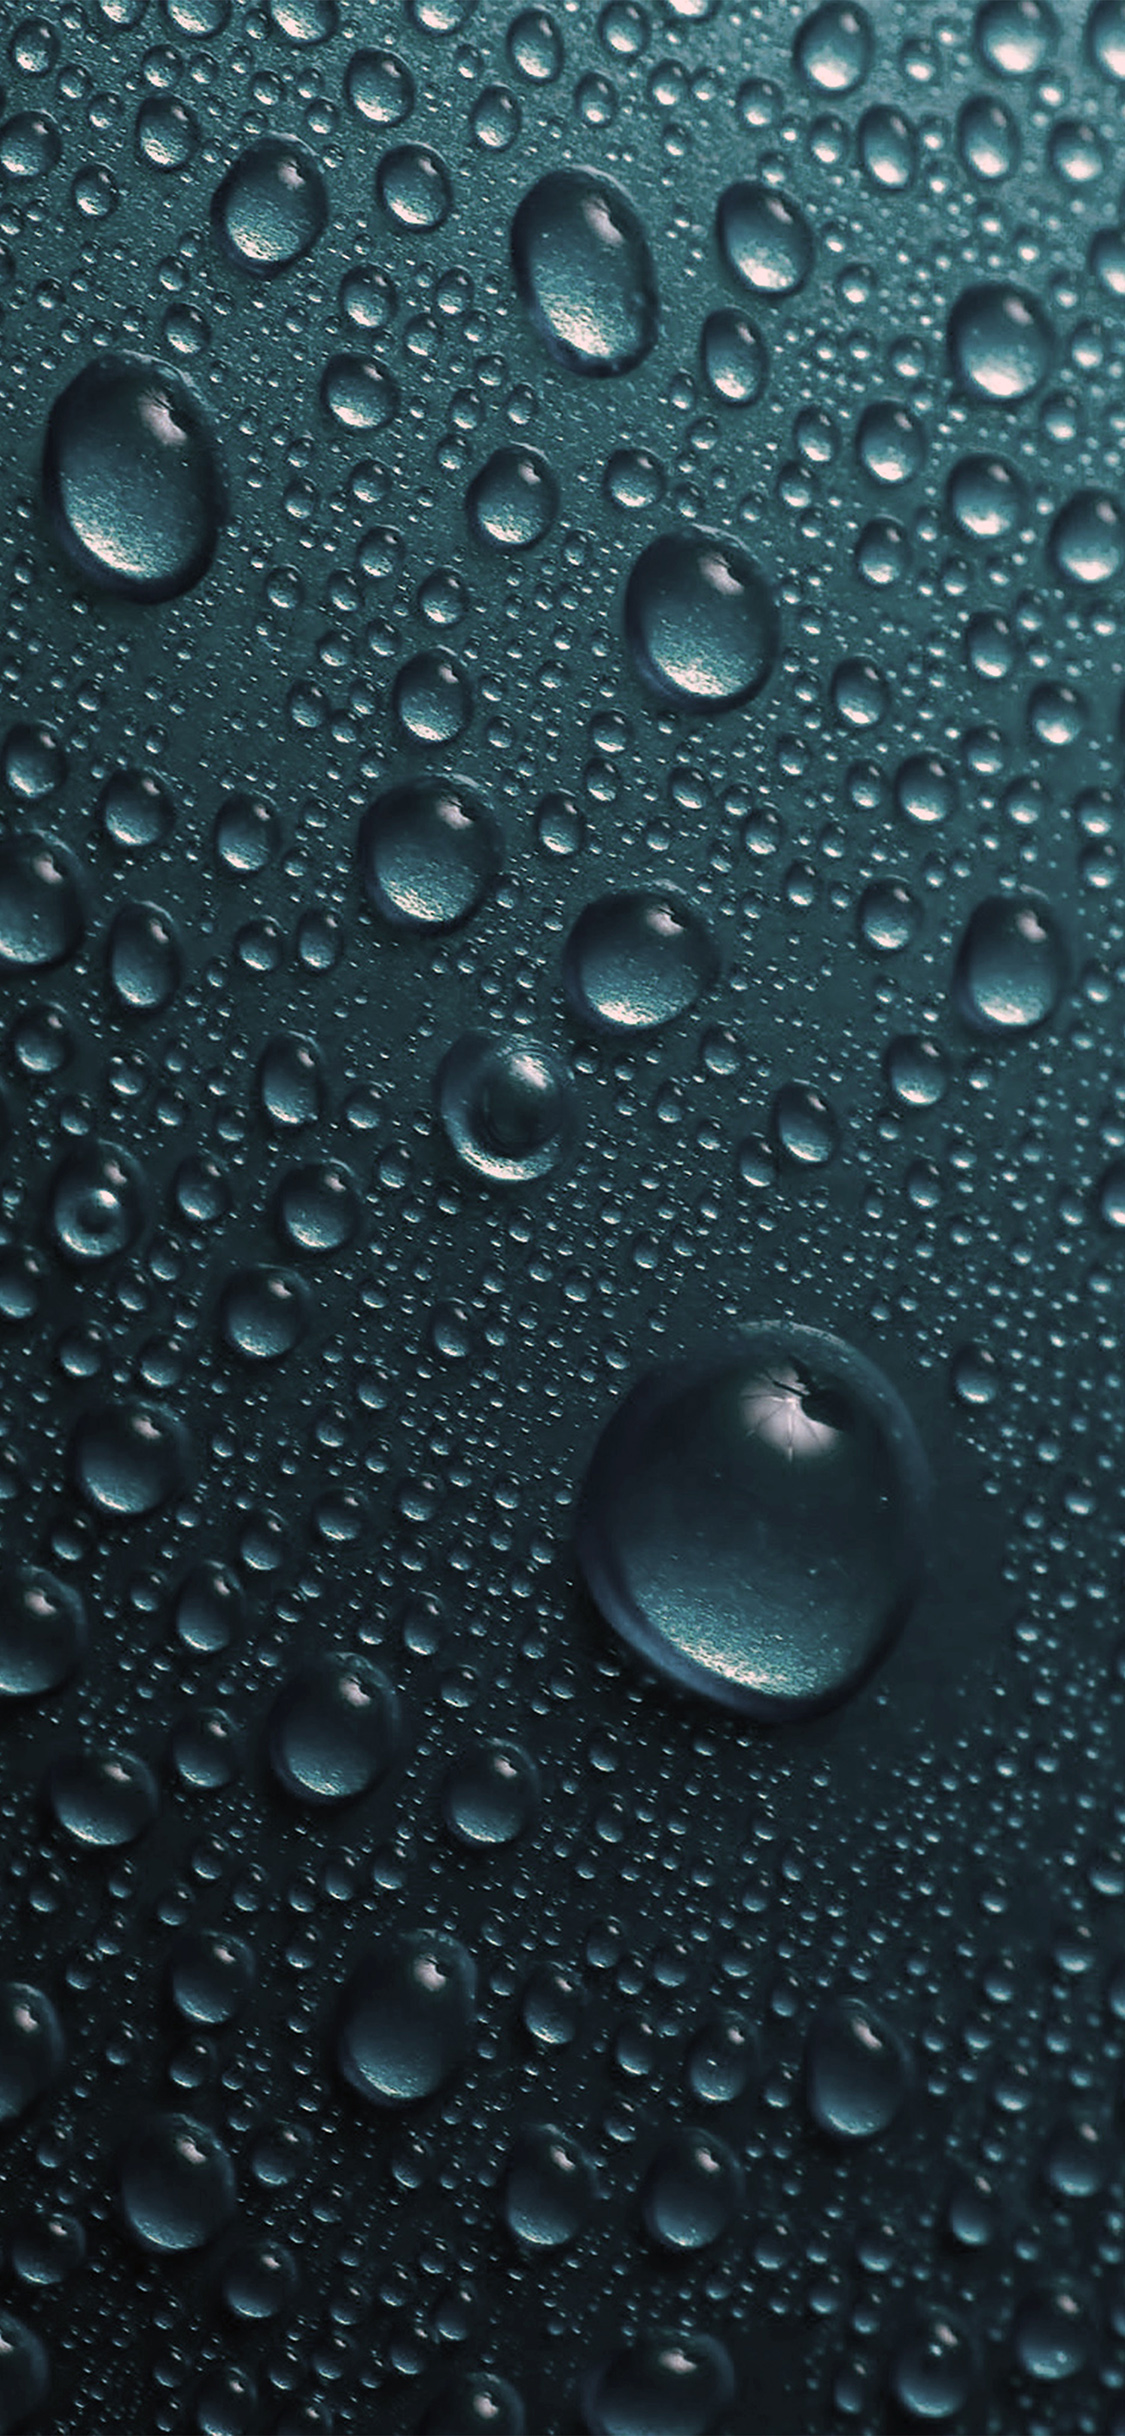 iPhone X wallpaper. rain drop blue water sad pattern dark